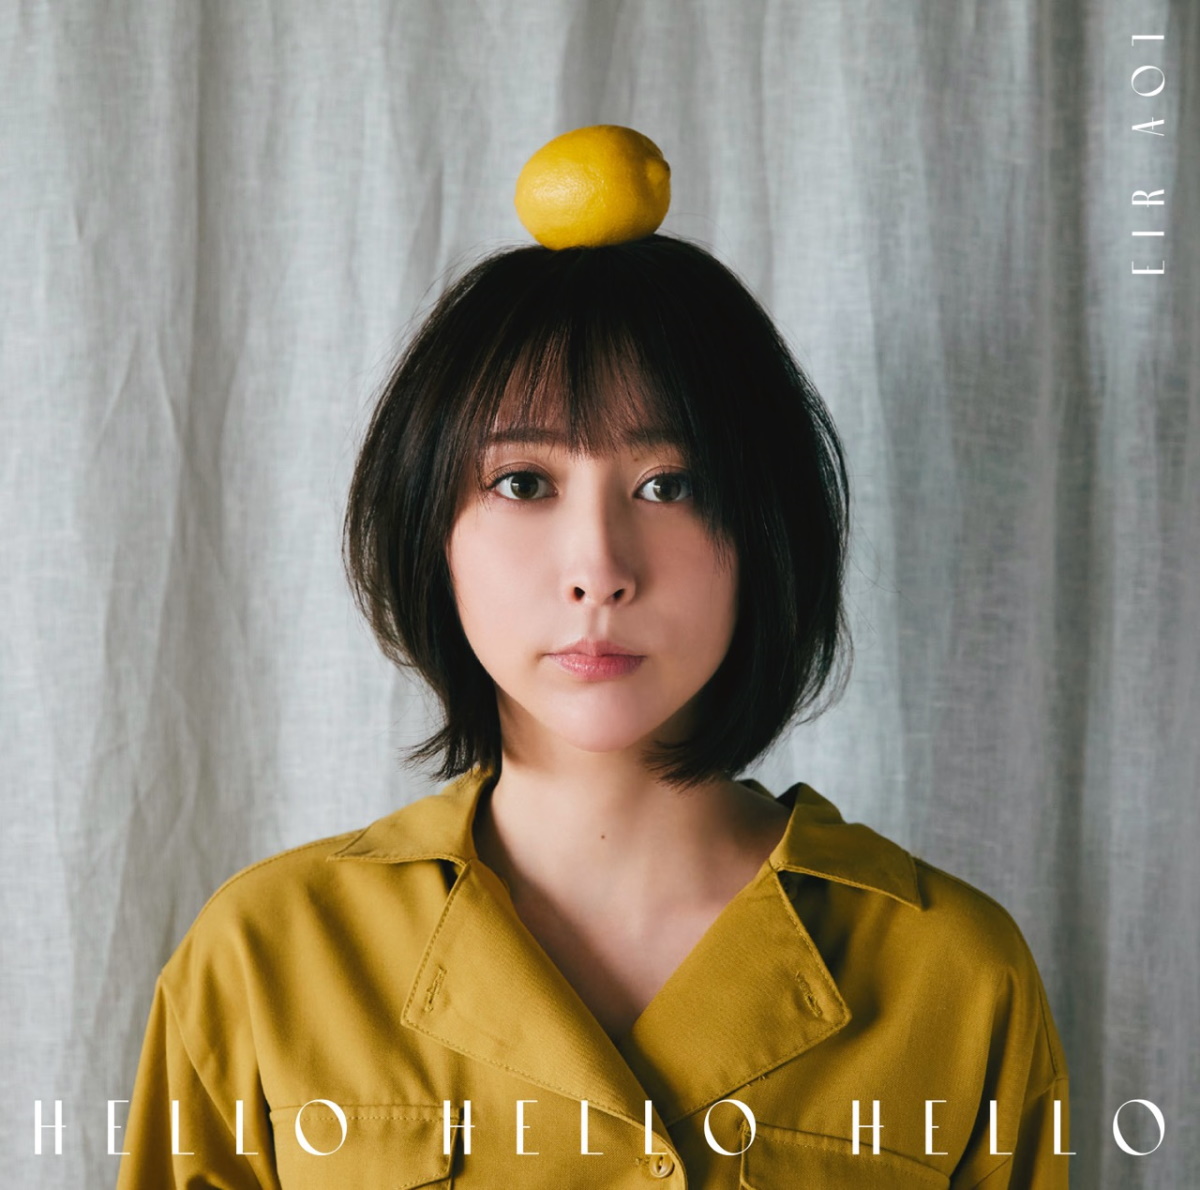 Cover art for『Eir Aoi - HELLO HELLO HELLO』from the release『HELLO HELLO HELLO